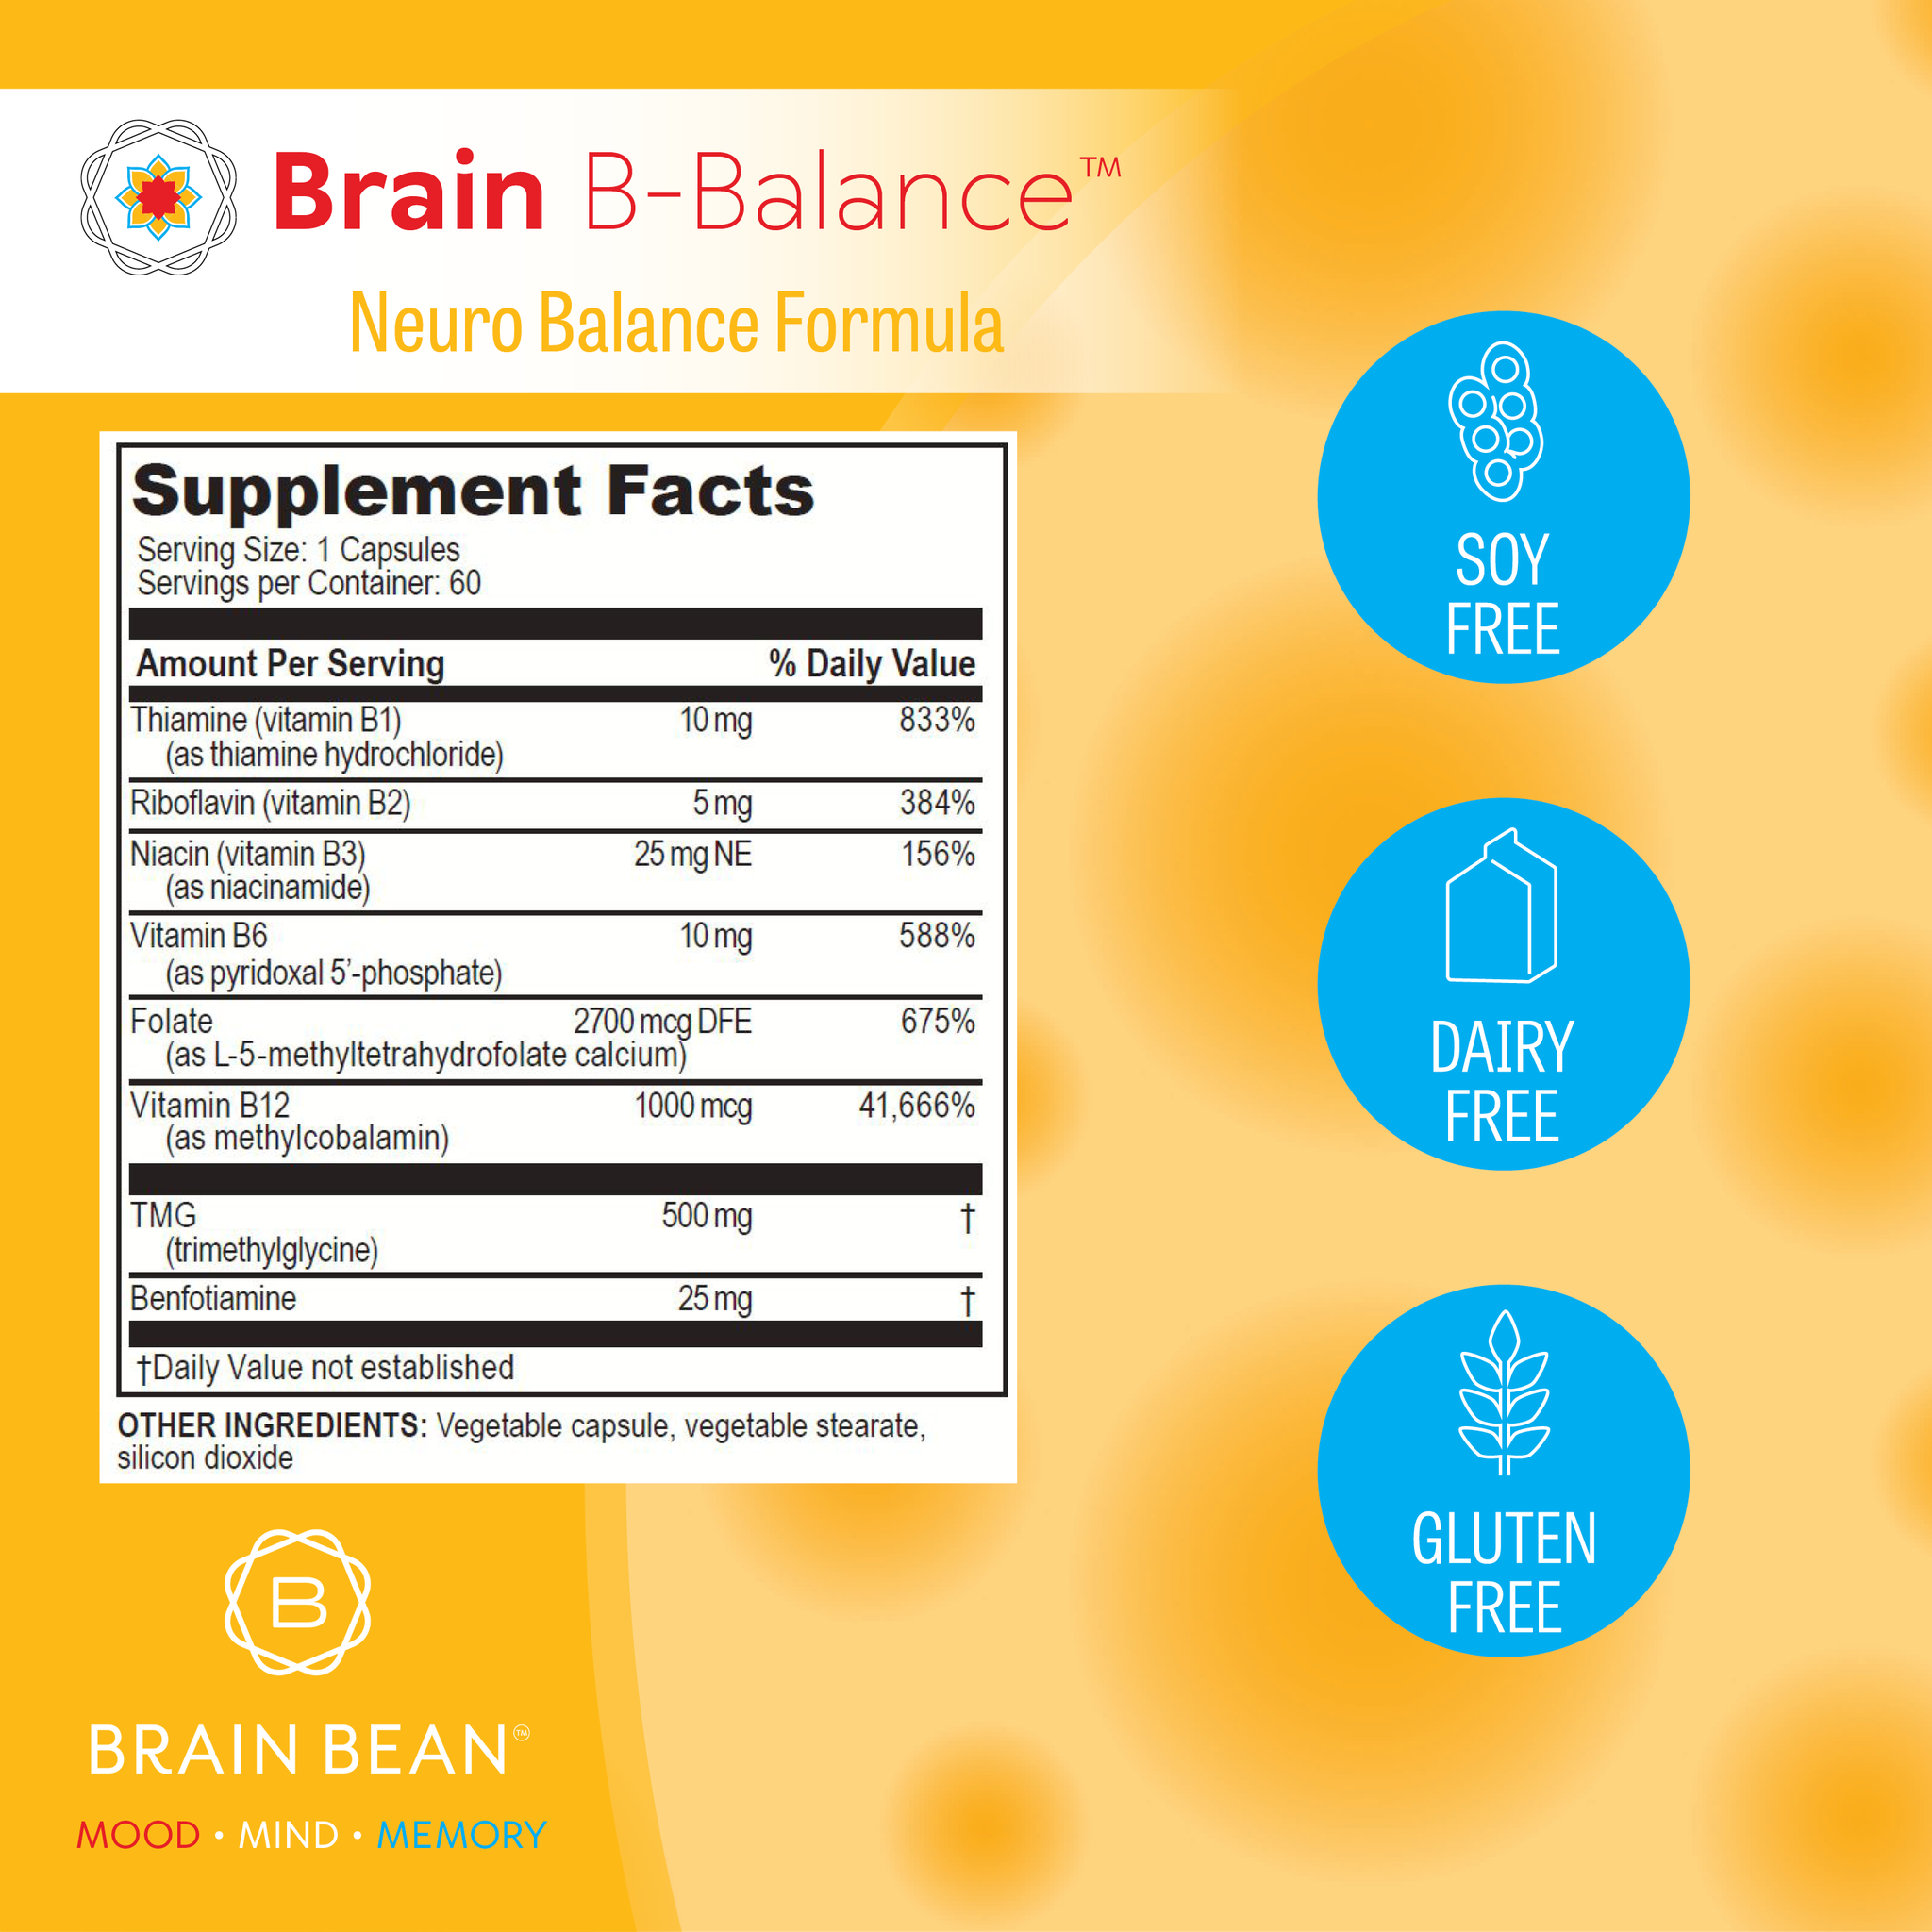 Brain B-Balance™